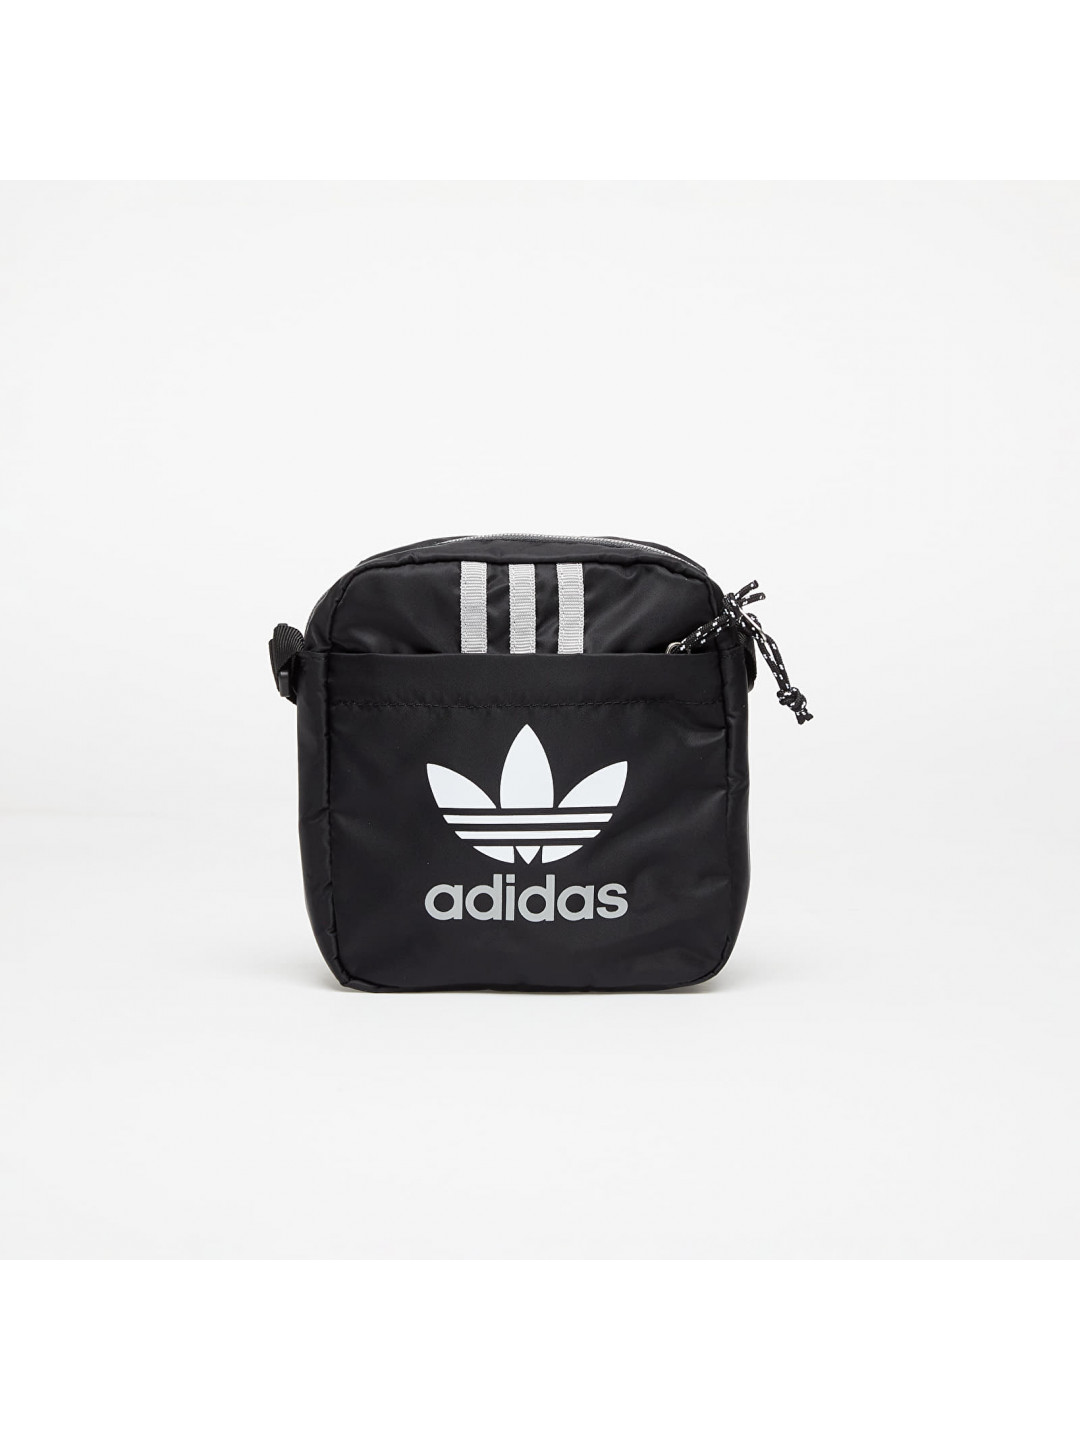 Adidas Originals Ac Festival Bag Black